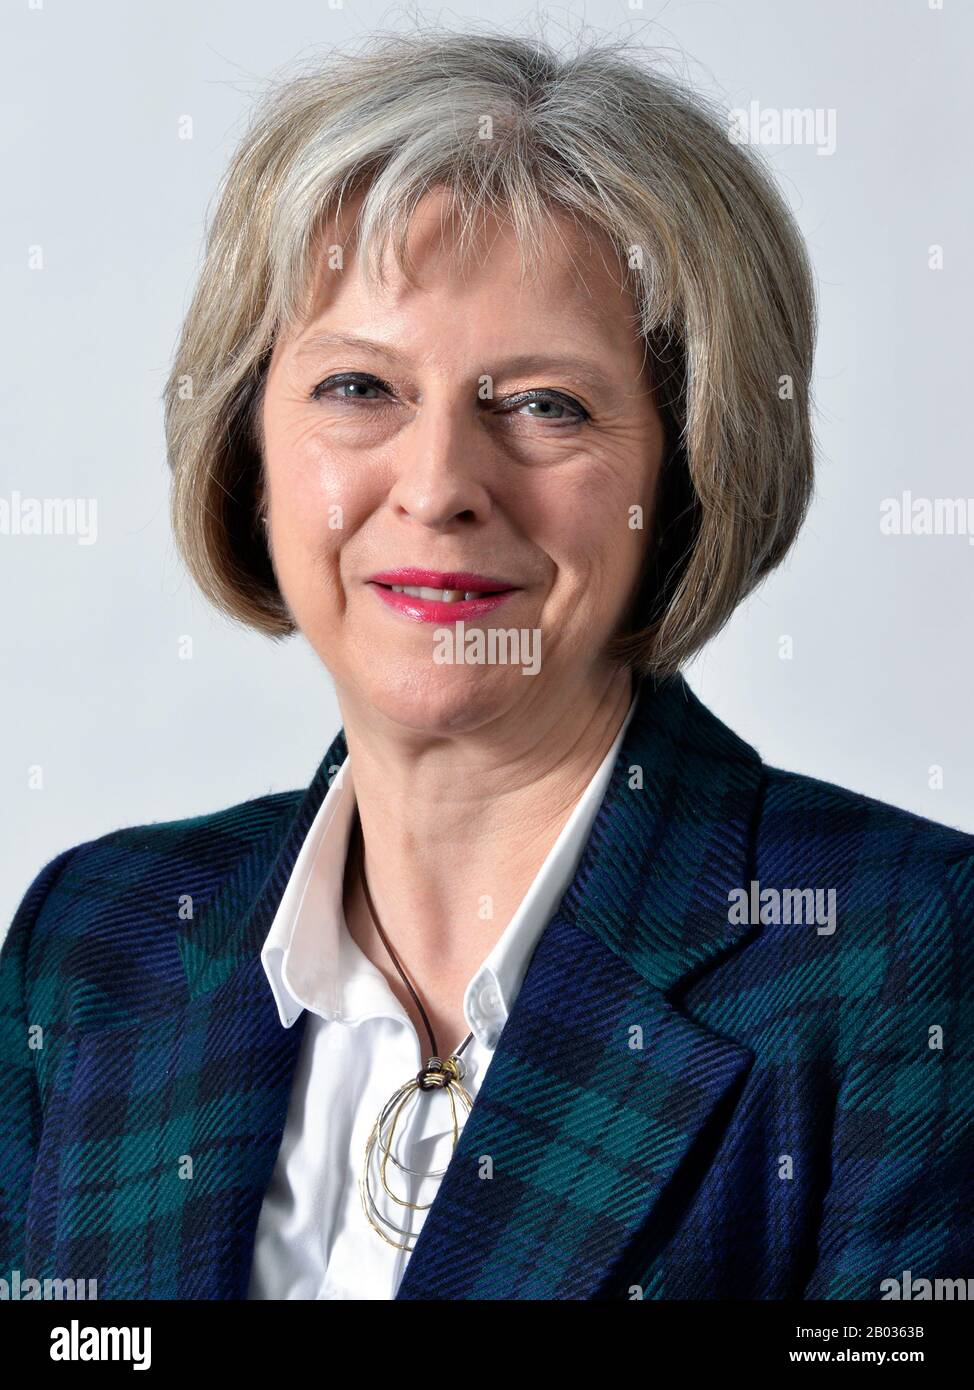 Theresa Mary May, PC, MP (nacida el 1 de octubre de 1956) es la primera Ministra del Reino Unido y líder del Partido Conservador, en funciones desde julio de 2016. También ha sido diputada al Parlamento (MP) de la circunscripción de Maidenhead desde 1997. May se identifica como un conservador de una nación y se ha caracterizado como un conservador liberal y demócrata cristiano. Es la segunda líder y primera ministra del Partido Conservador, después de Margaret Thatcher. Foto de stock